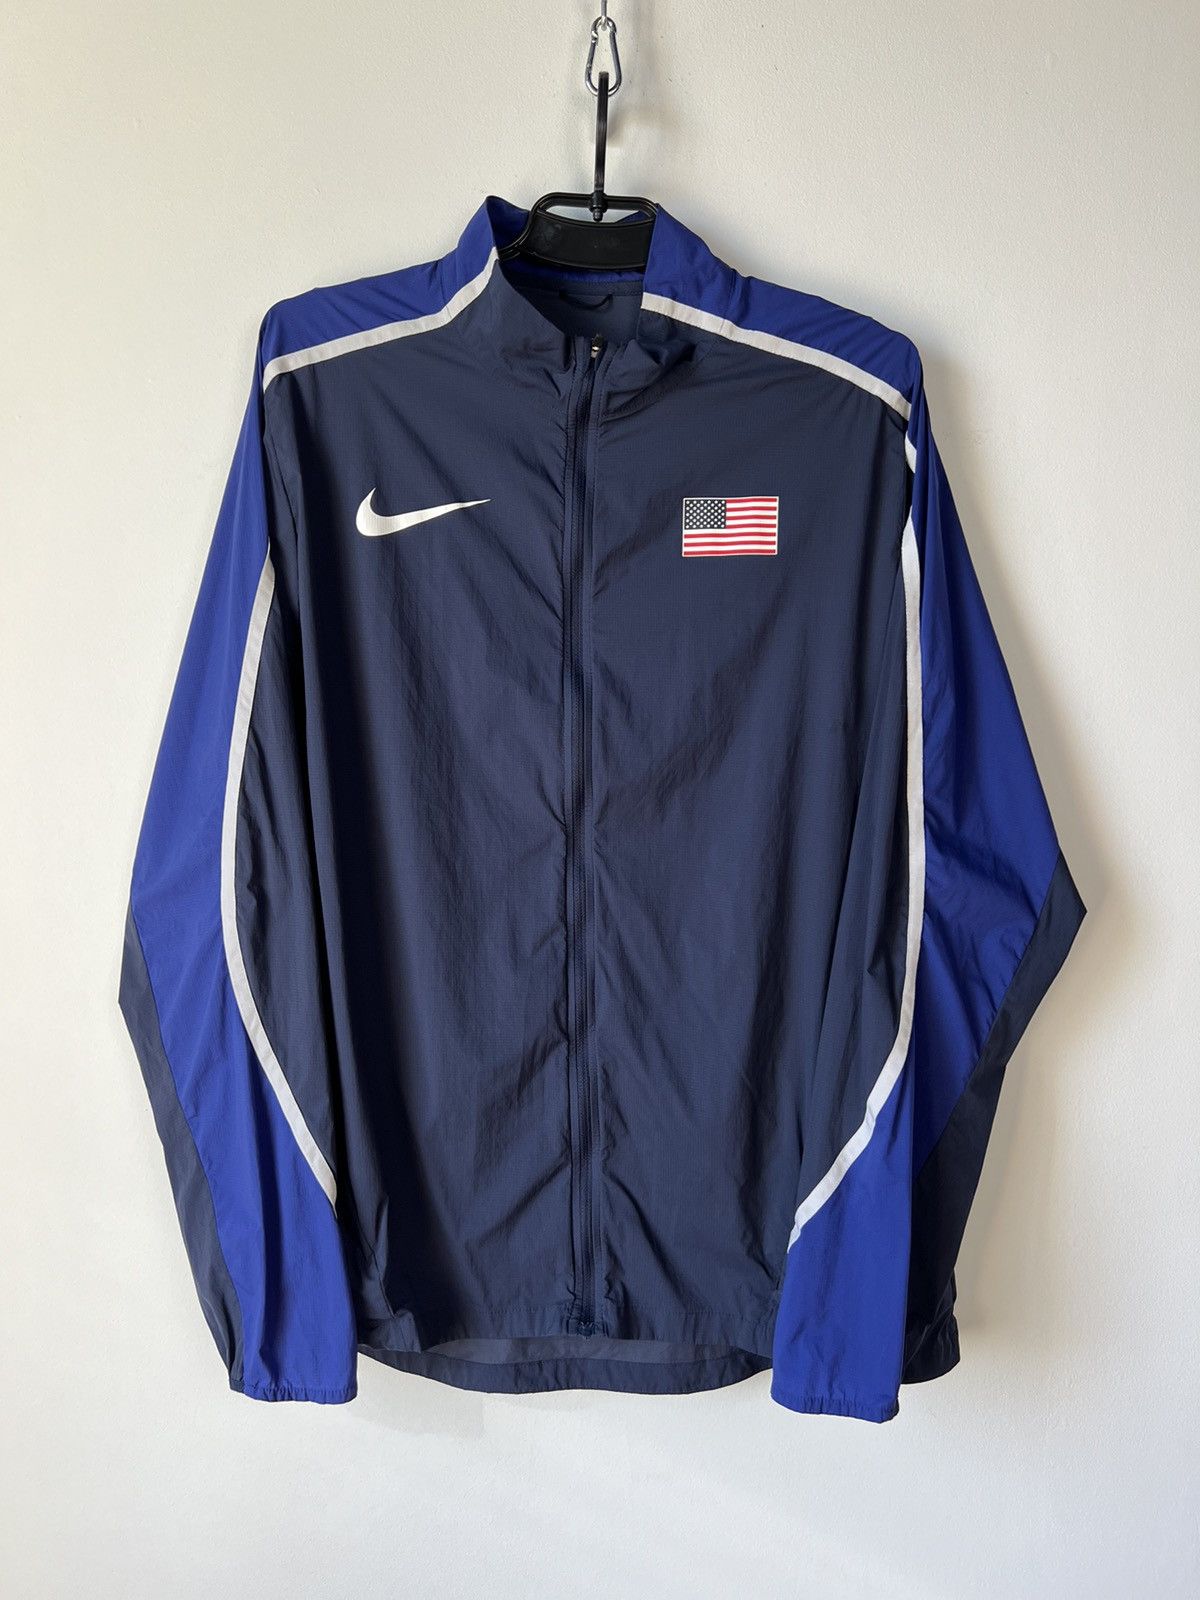 Nike Nike Pro Elite USA Olympic Podium Track&Field Jacket Size L ...